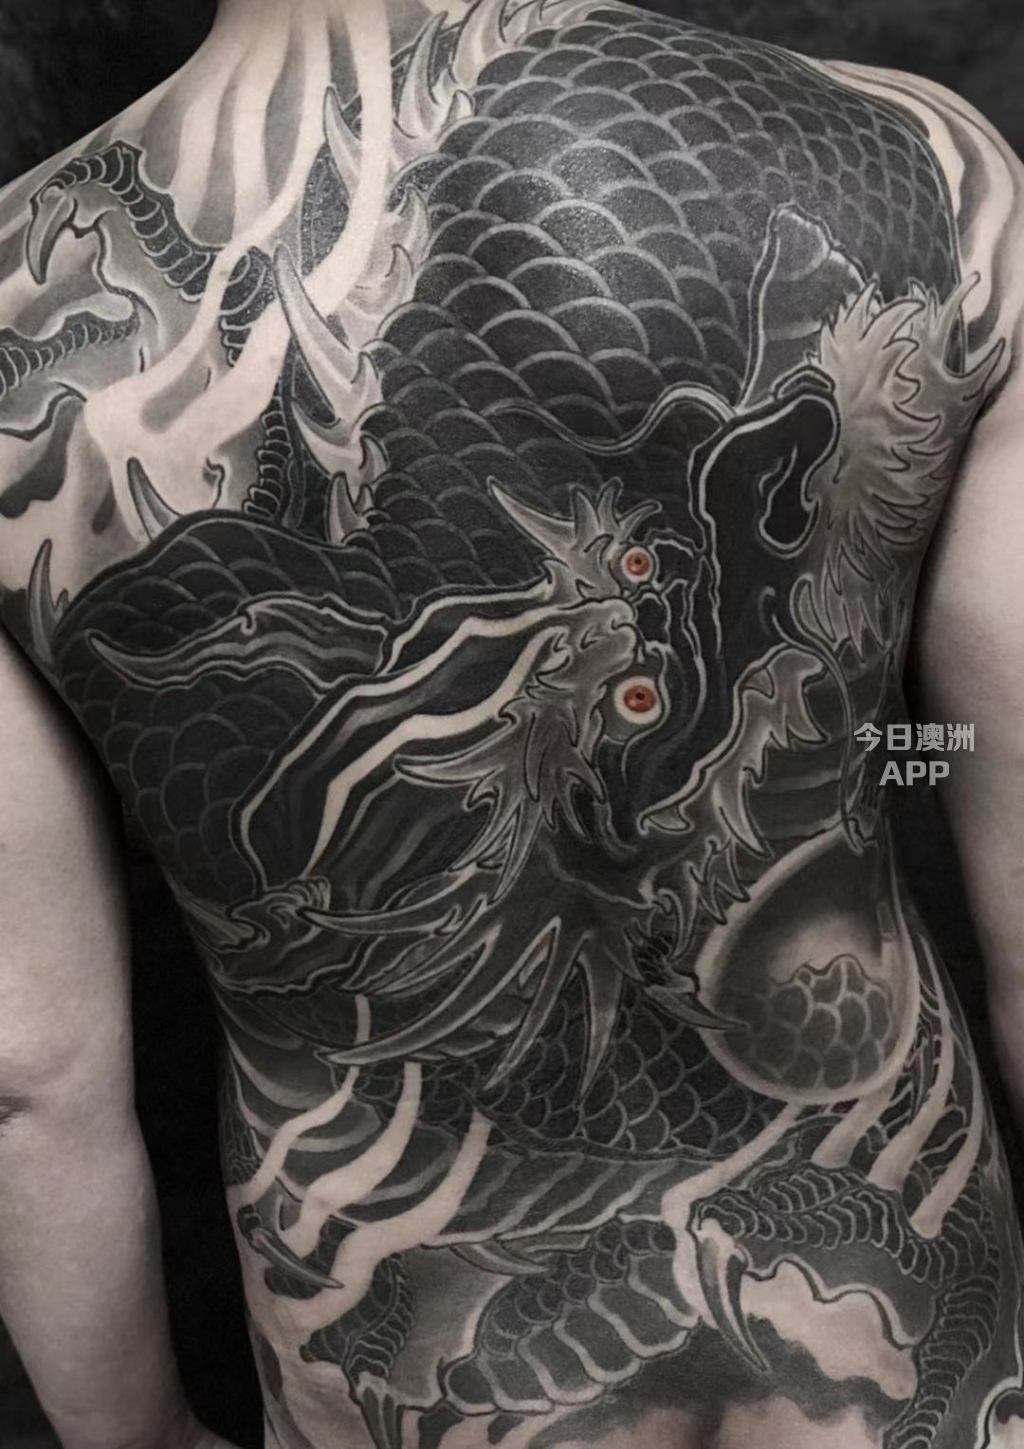  墨尔本华人纹身店 Inkache Tattoo